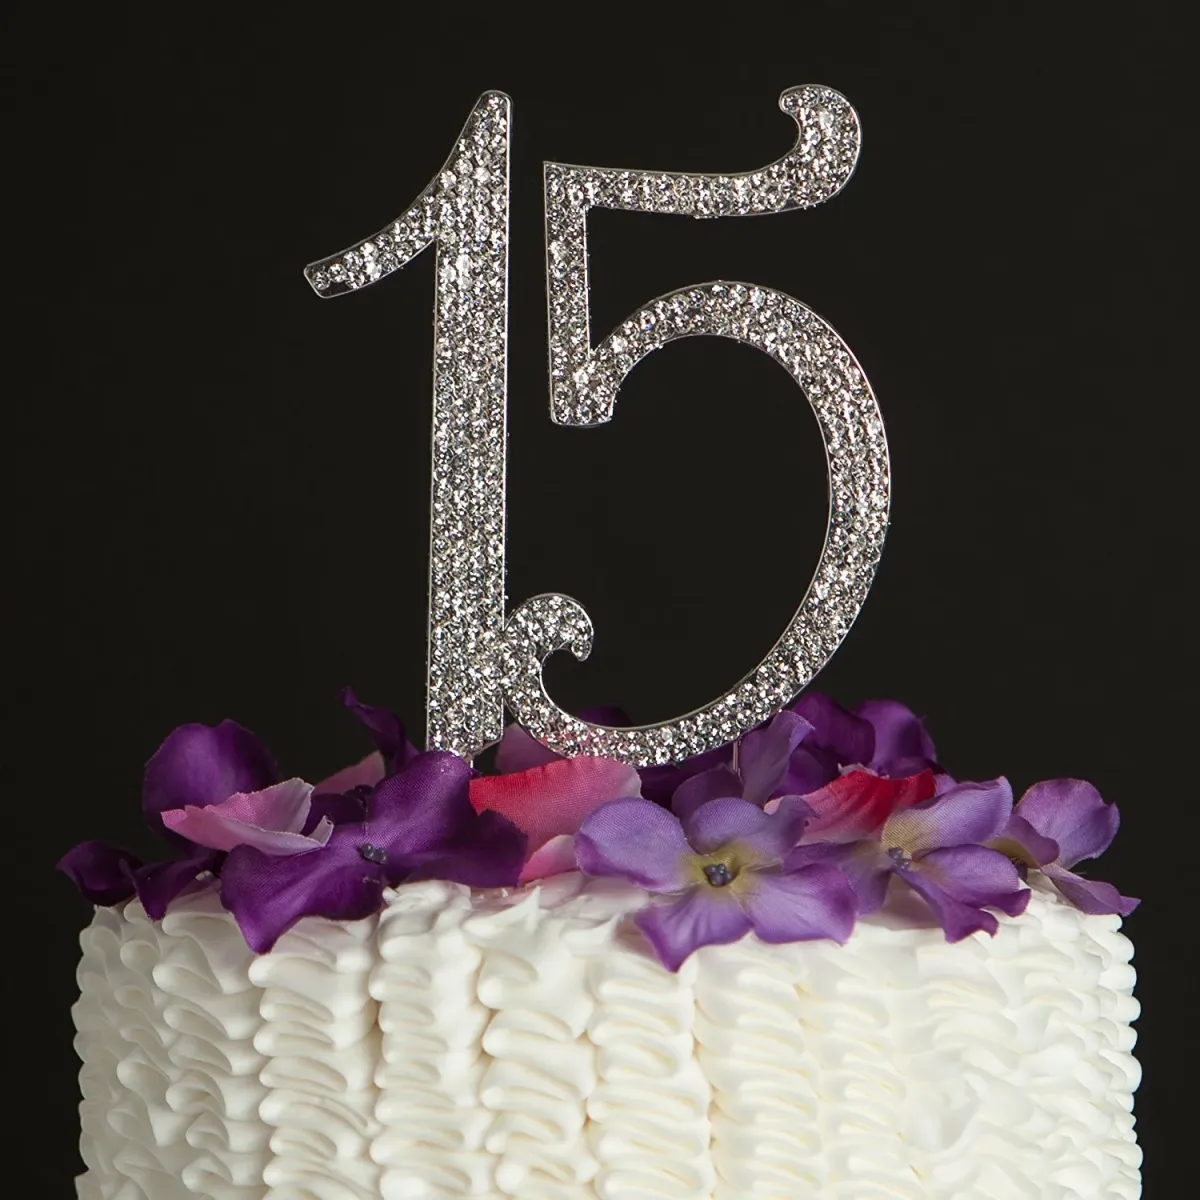 С 15 летием девочке прикольные. Торт на день рождения 15 лет. Тортик цифры 15. С днём рождения 15 лет девушке. Торт для девочки 15 лет на день рождения.